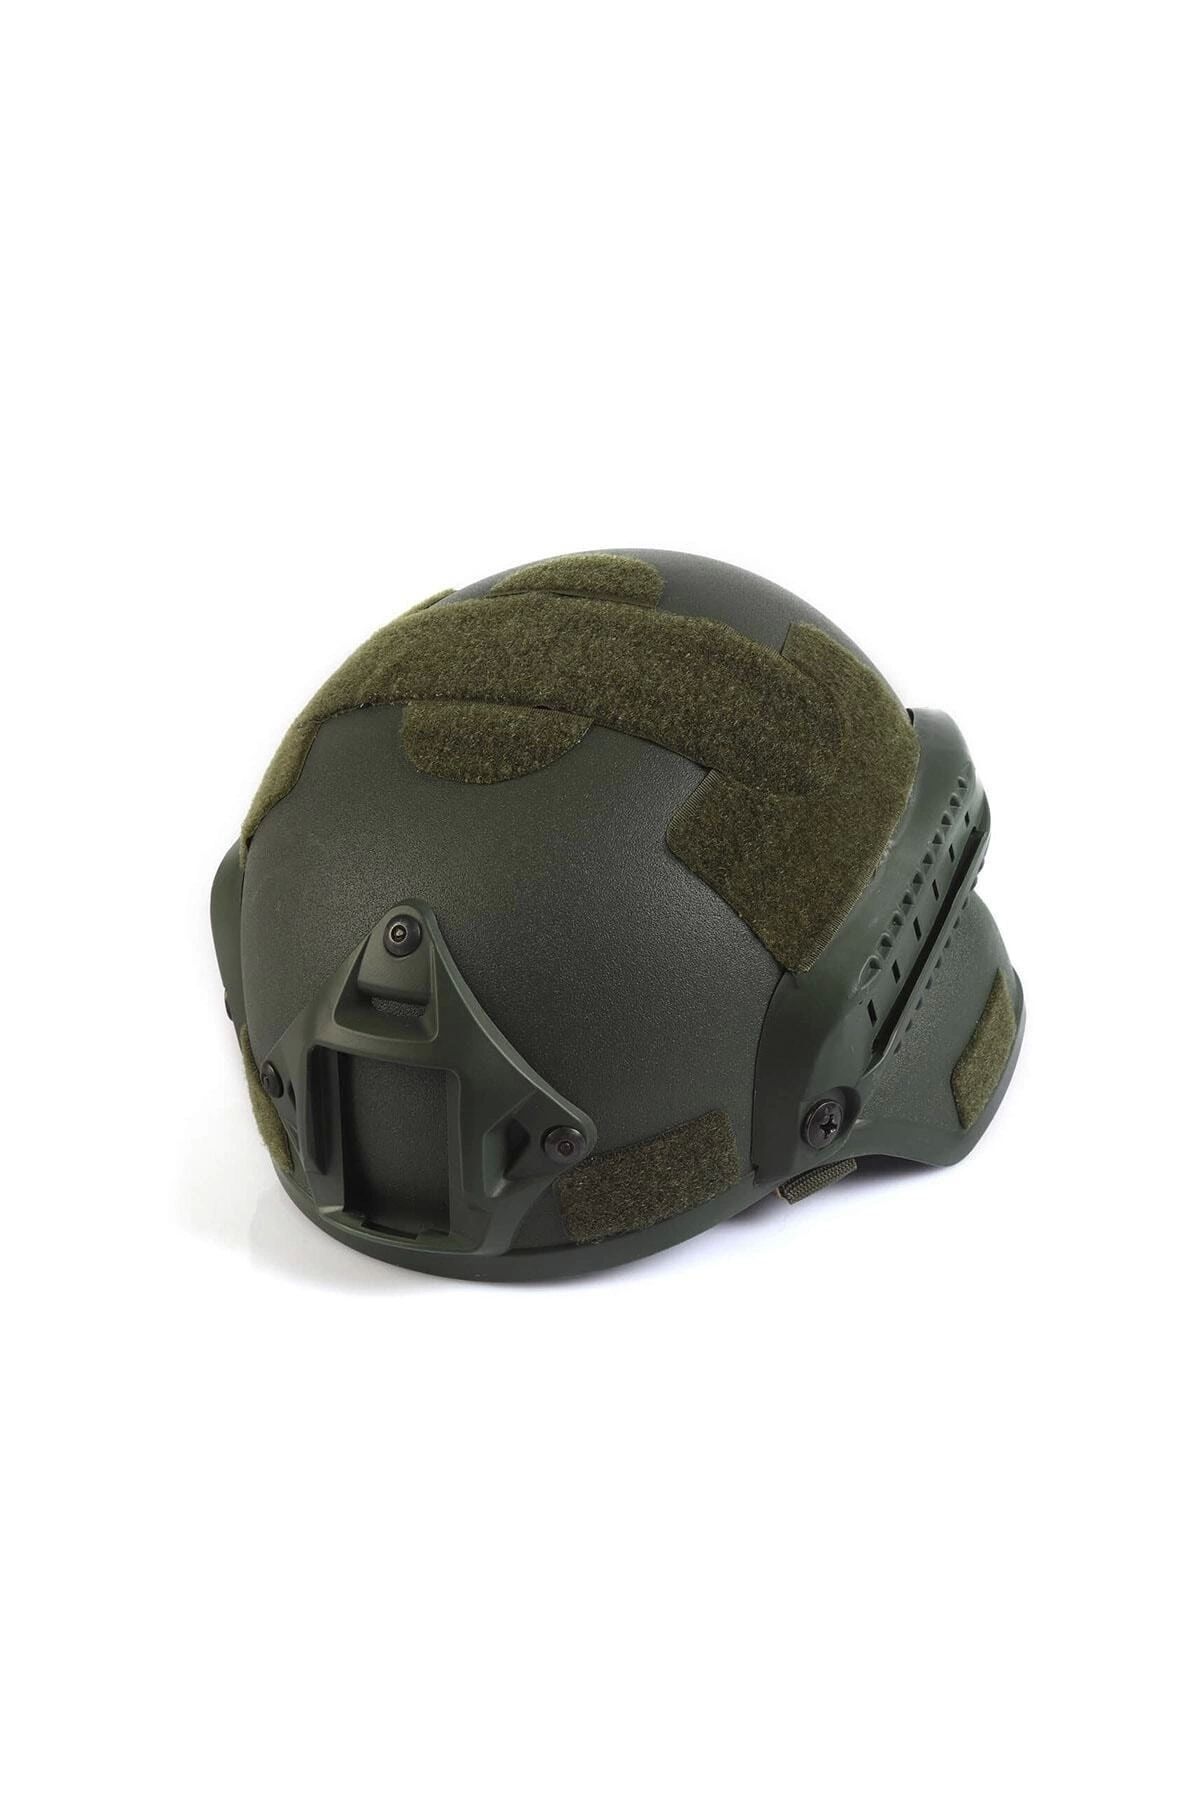 Asker Marketi Haki Airsoft Kompozit Başlık  Koruyucu Tactical Kask Paintball